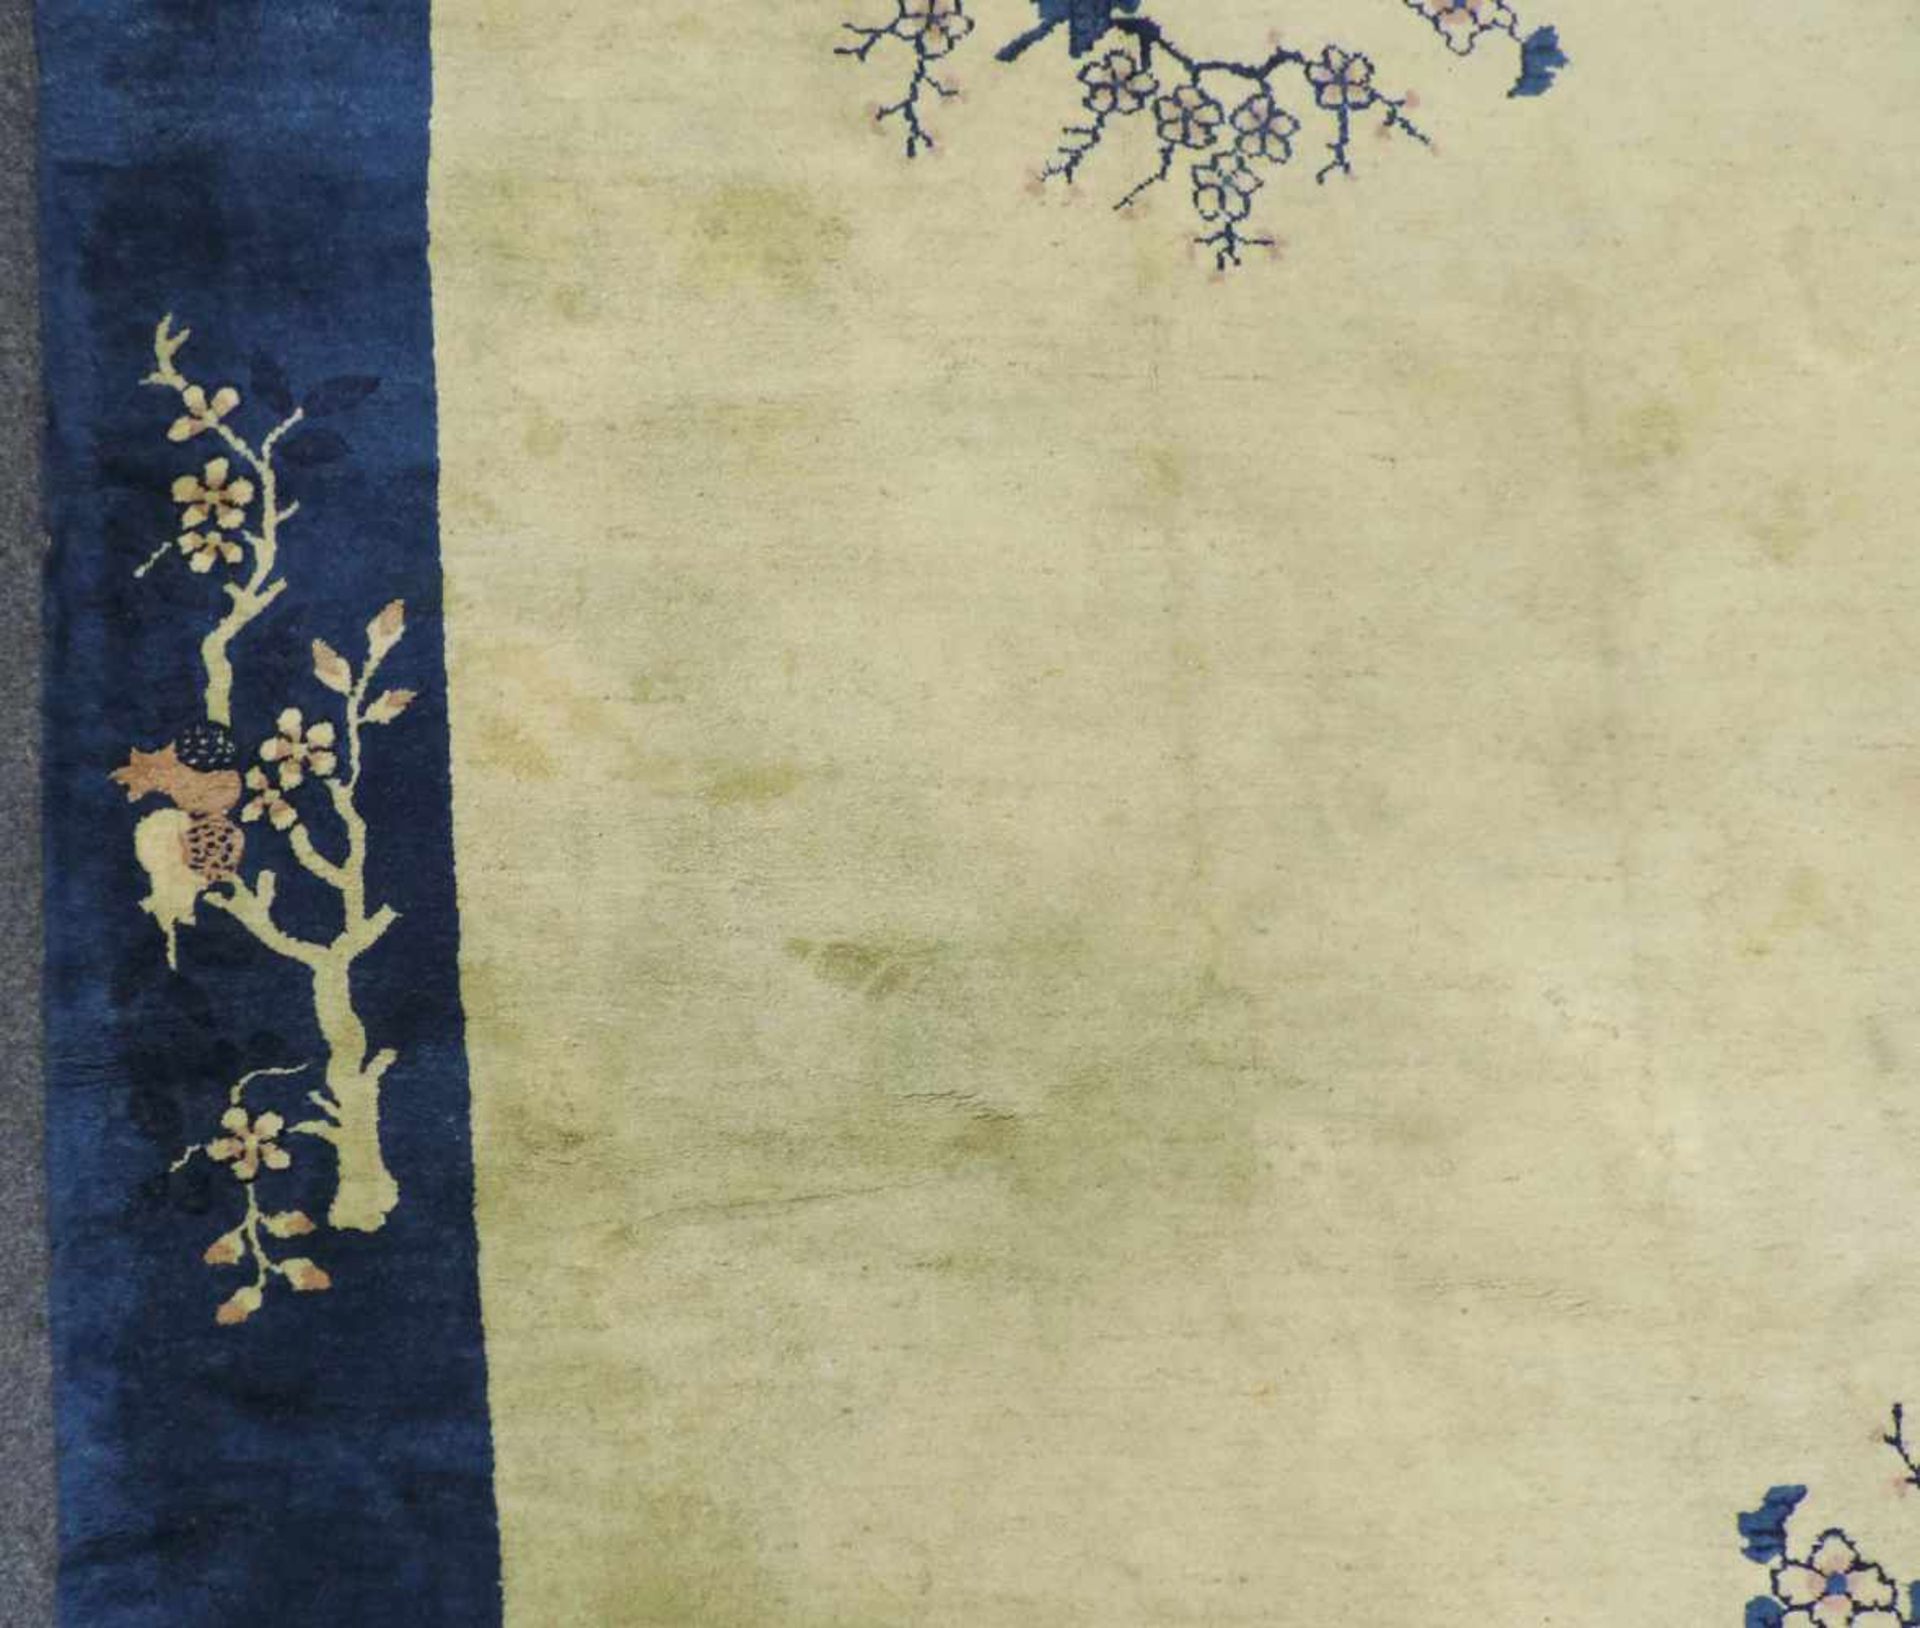 Peking Teppich. China. Alt, um 1900 - 1920.360 cm x 277 cm. Handgeknüpft. Wolle auf Baumwolle. - Bild 5 aus 10